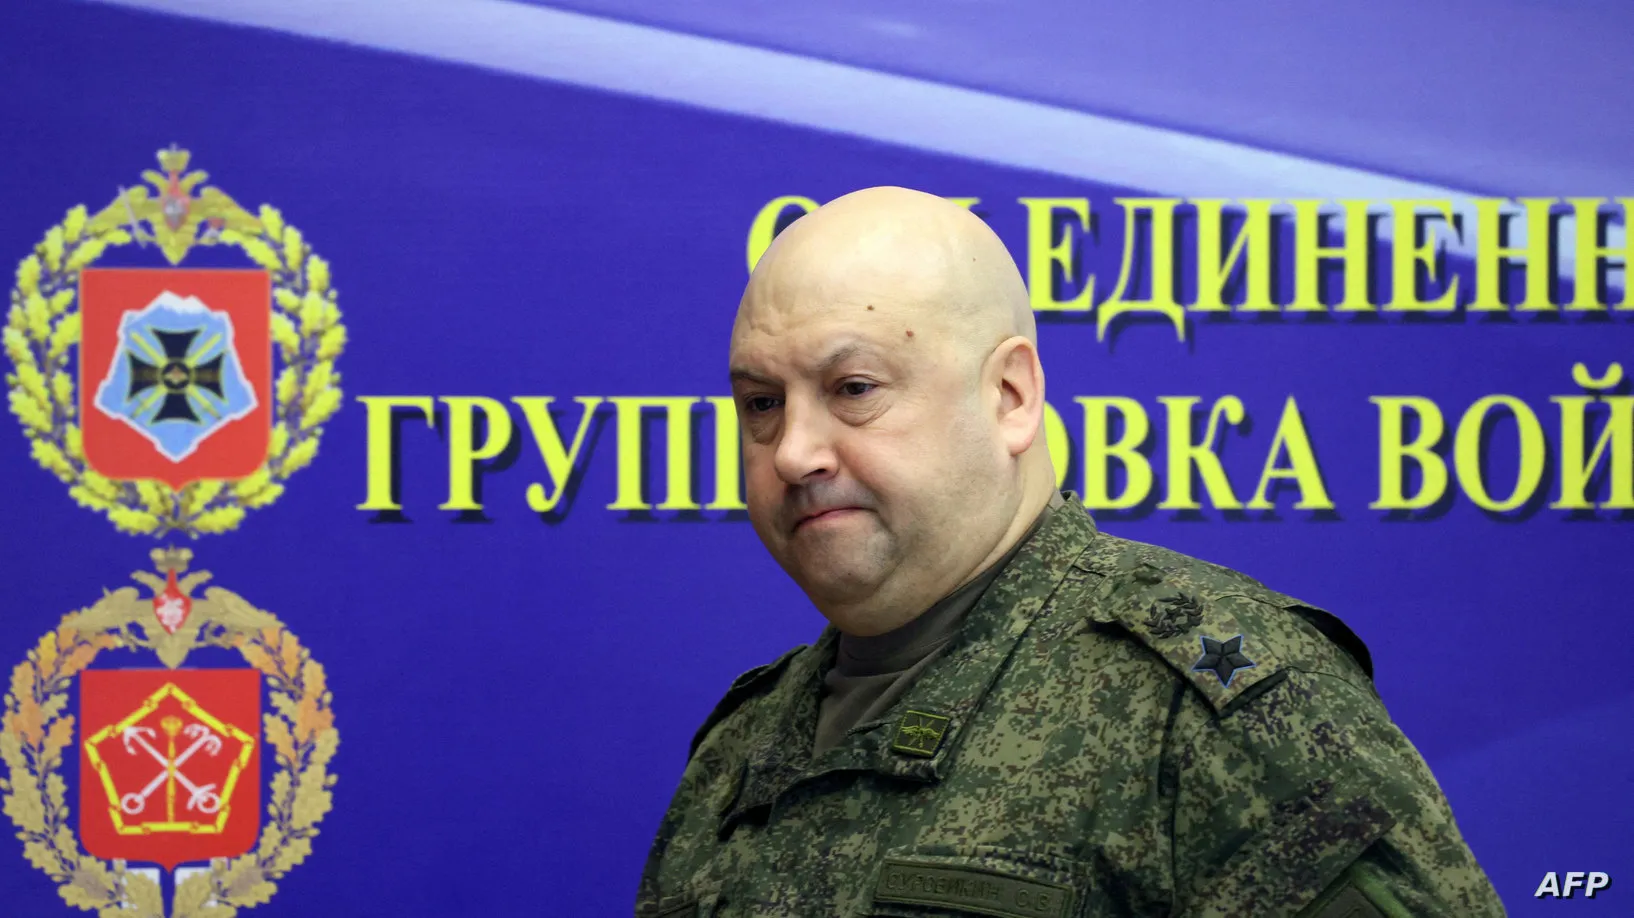 الجنرال "سيرغي سوروفكين